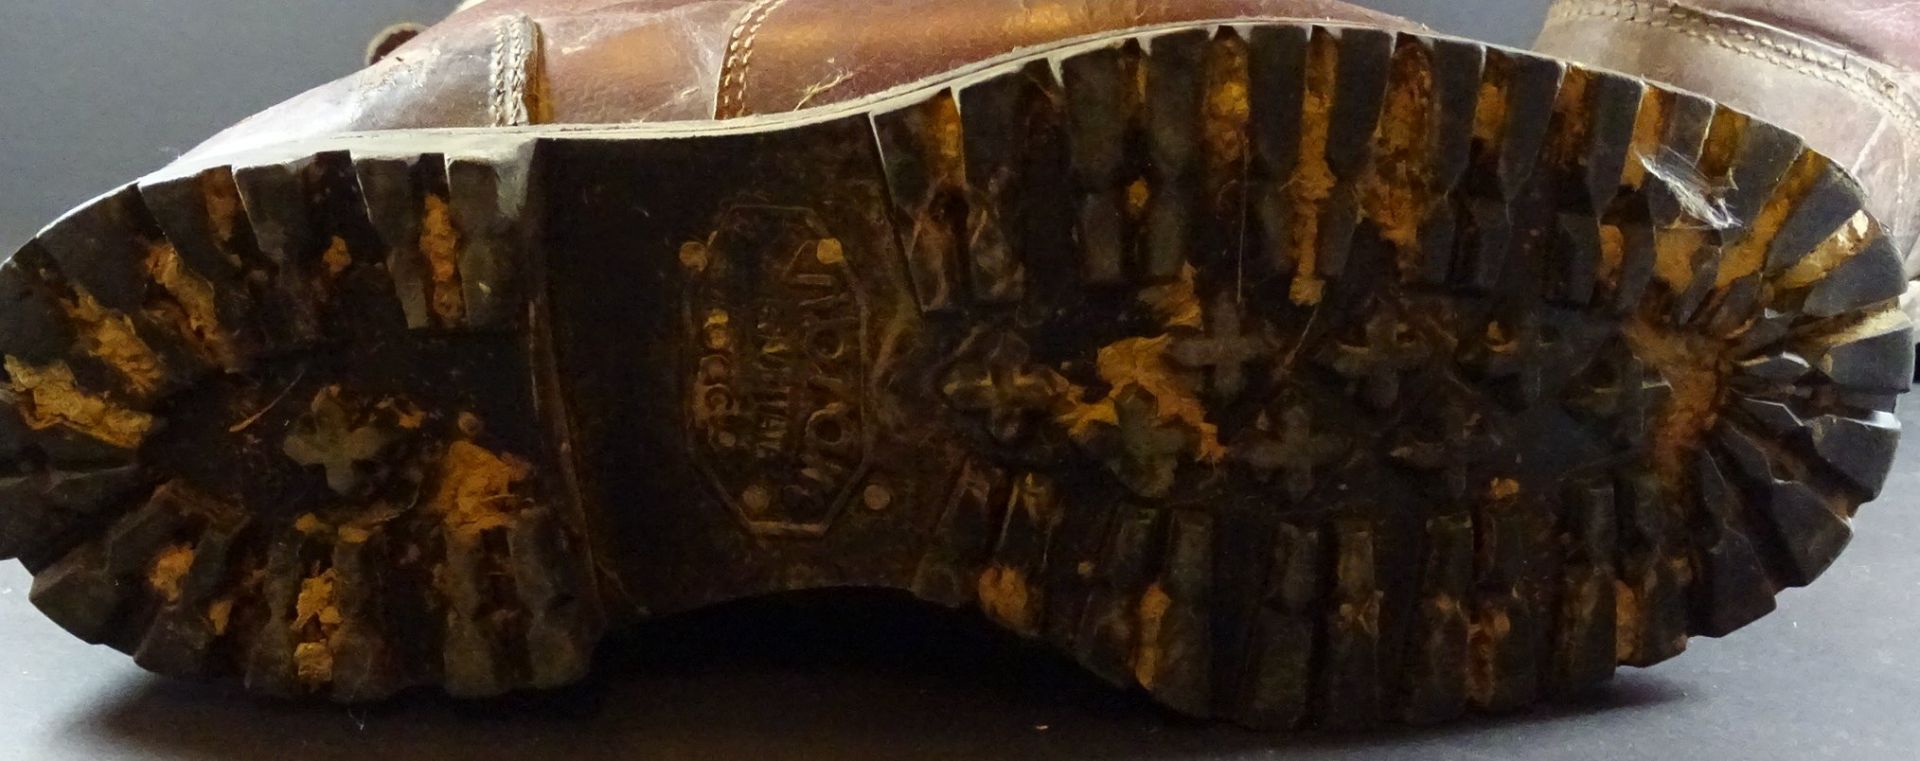 Paar Filzstiefel,braunes Leder, (Wachstiefel) H. 39cm, Alters- und Gebrauchsspuren - Bild 5 aus 6